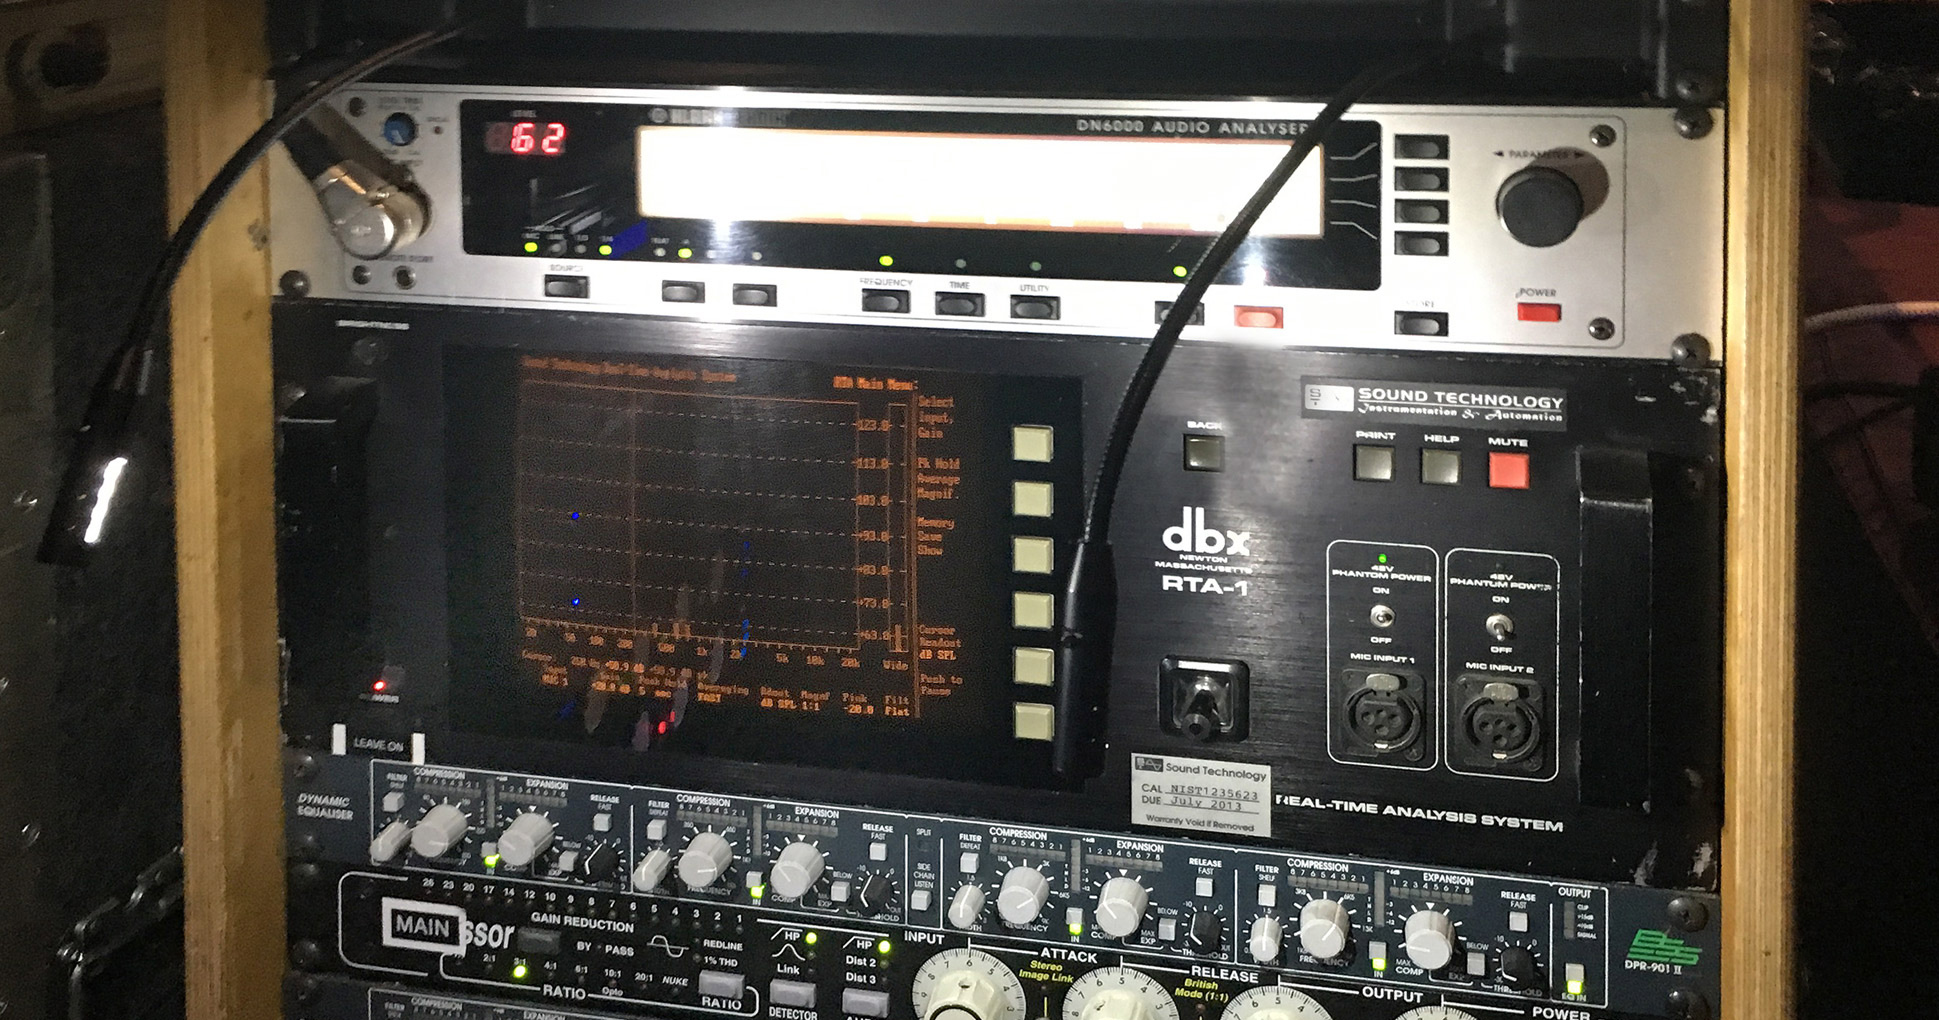 JBL VTX Lenny Krawitz Tauron Arena dbx RTA 1 Realtime Audio Analyzer BSS DPR 901 II small